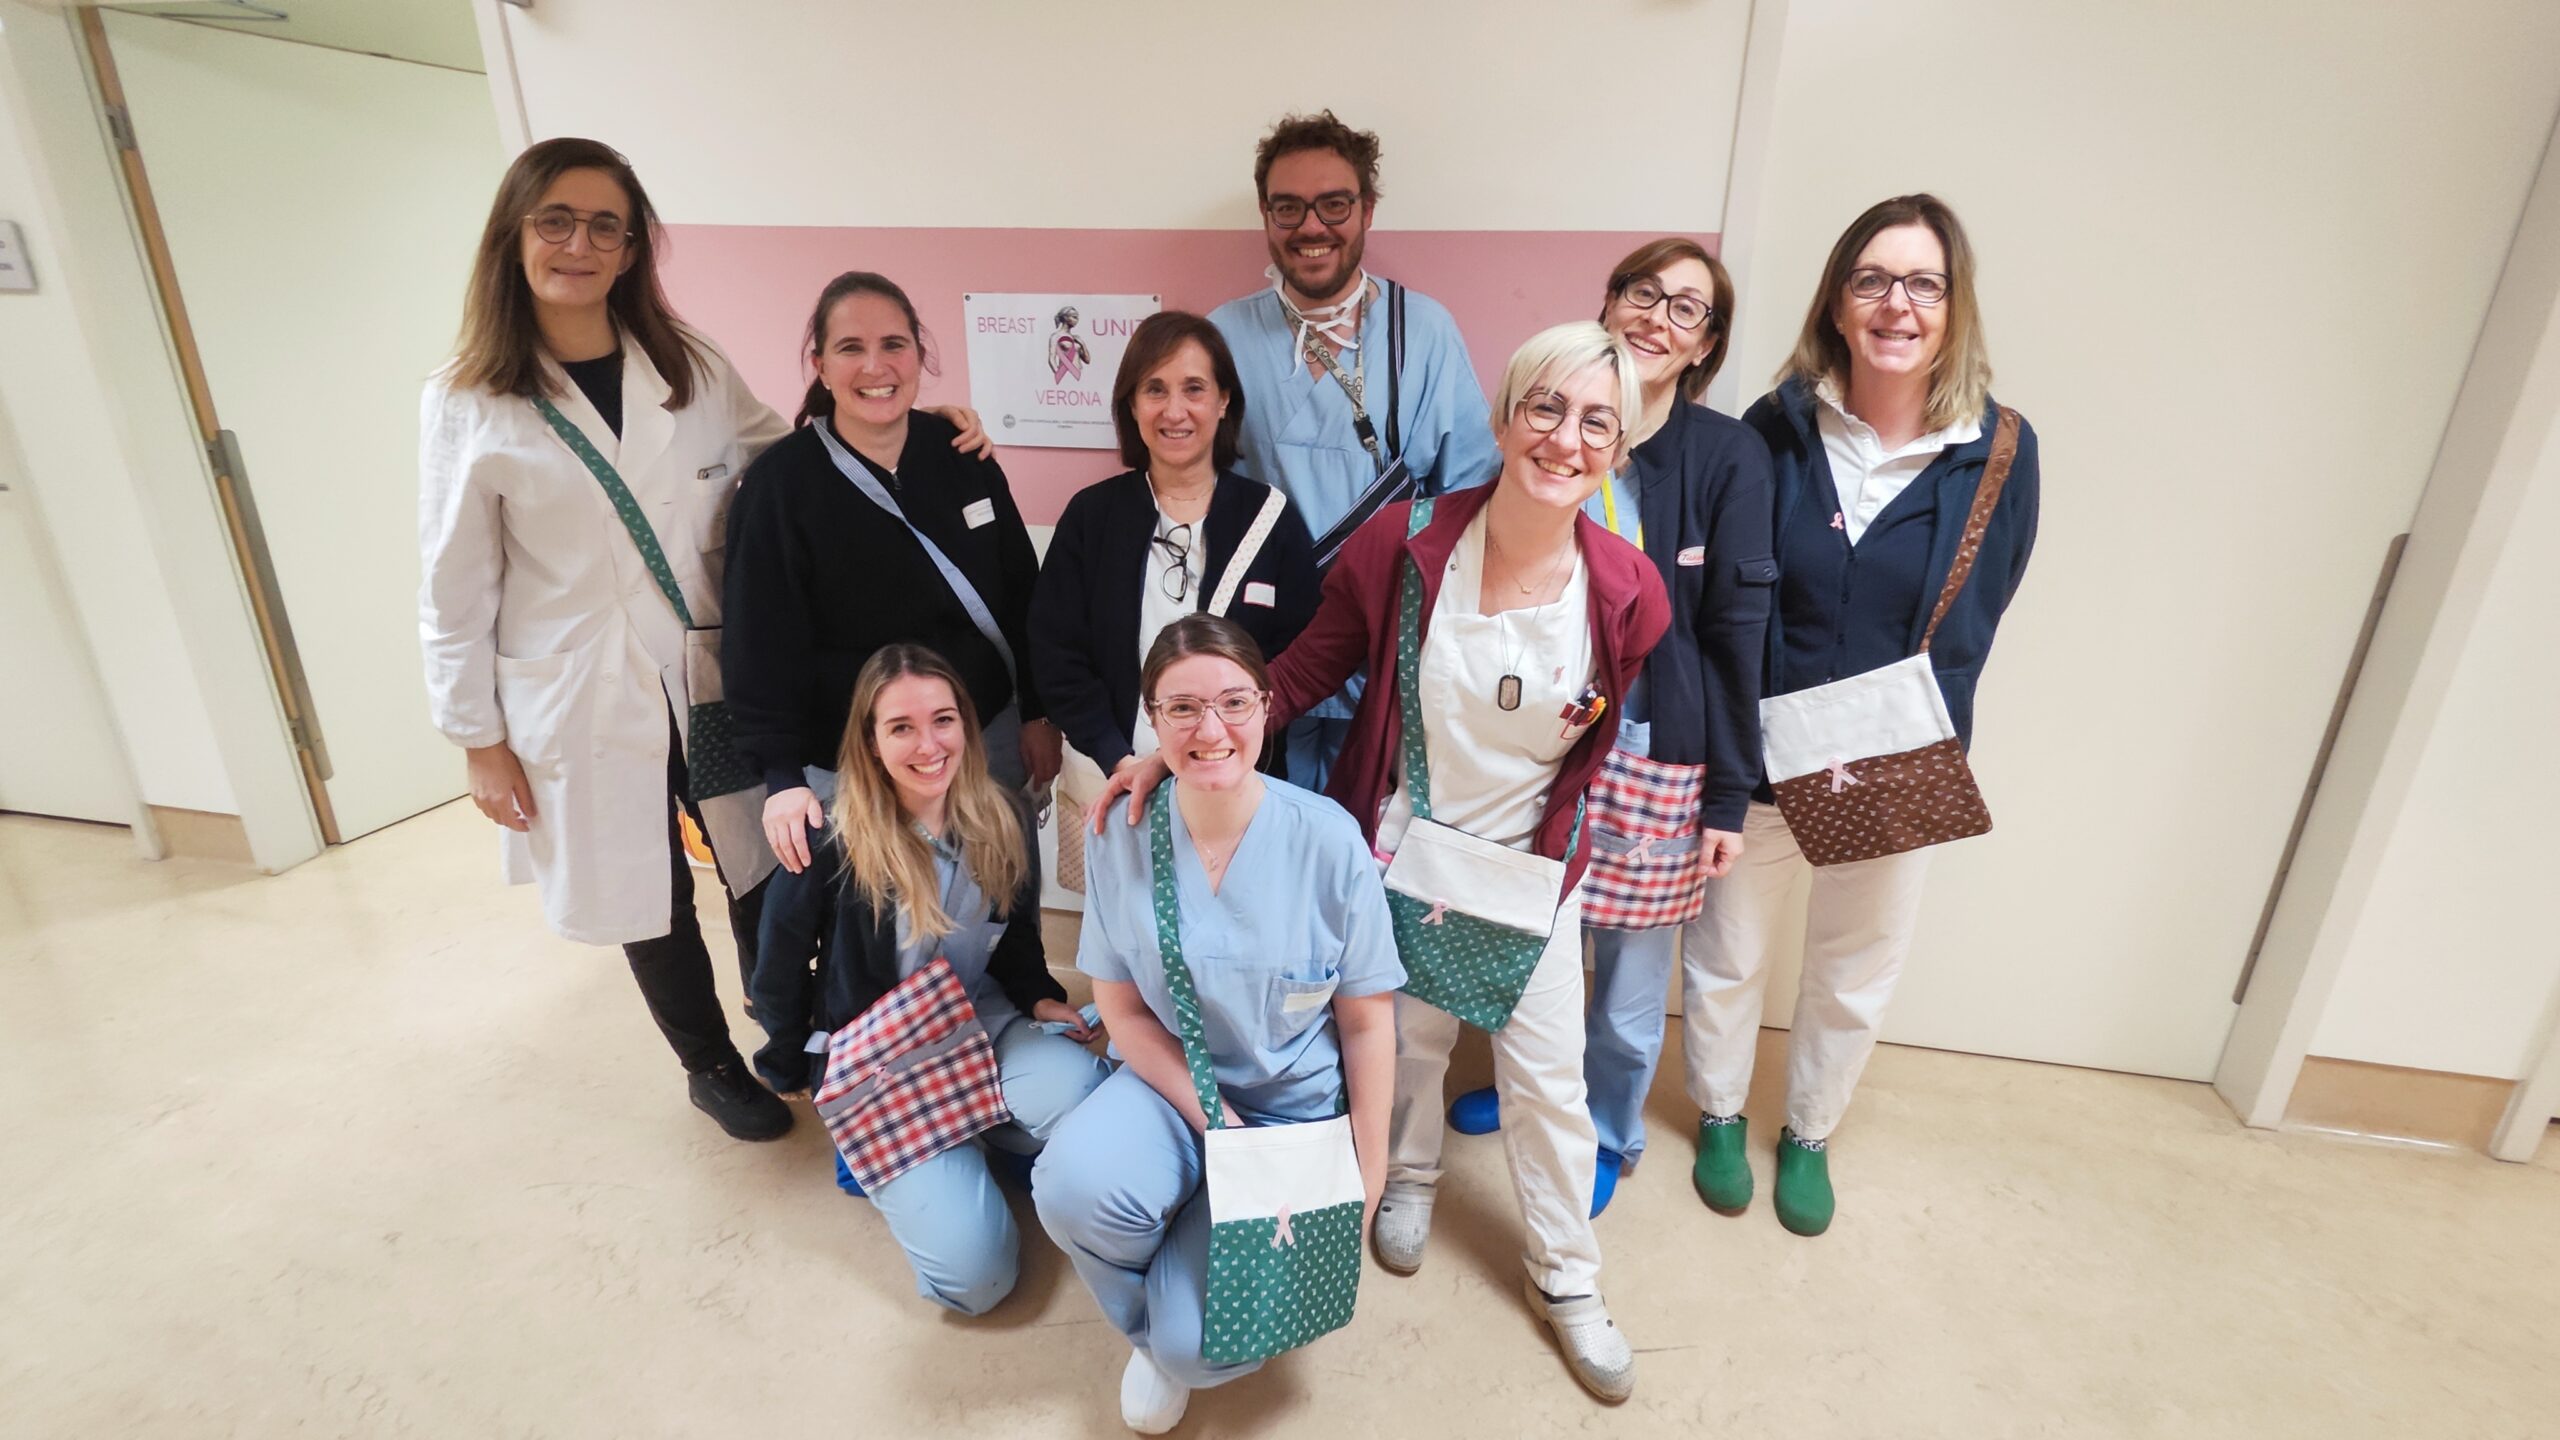 Arriva anche all’Ospedale di Borgo Trento il progetto “Bags for life”. Le borse porta drenaggio, un aiuto per le donne operate